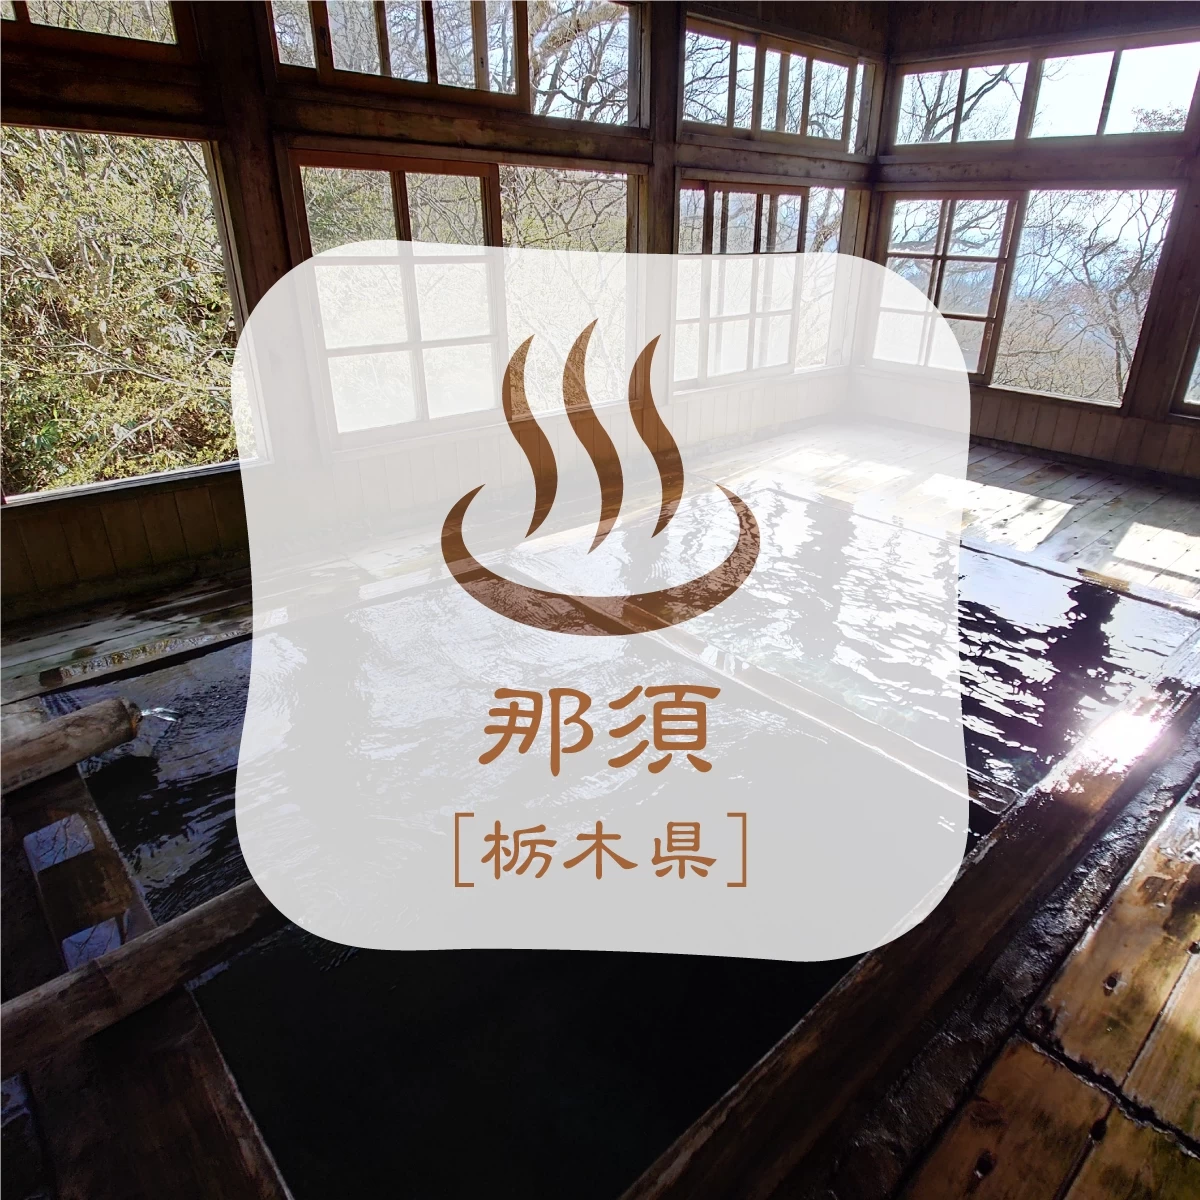 那須の秘湯へカップルで温泉旅行。那須岳登山でランプの宿へ